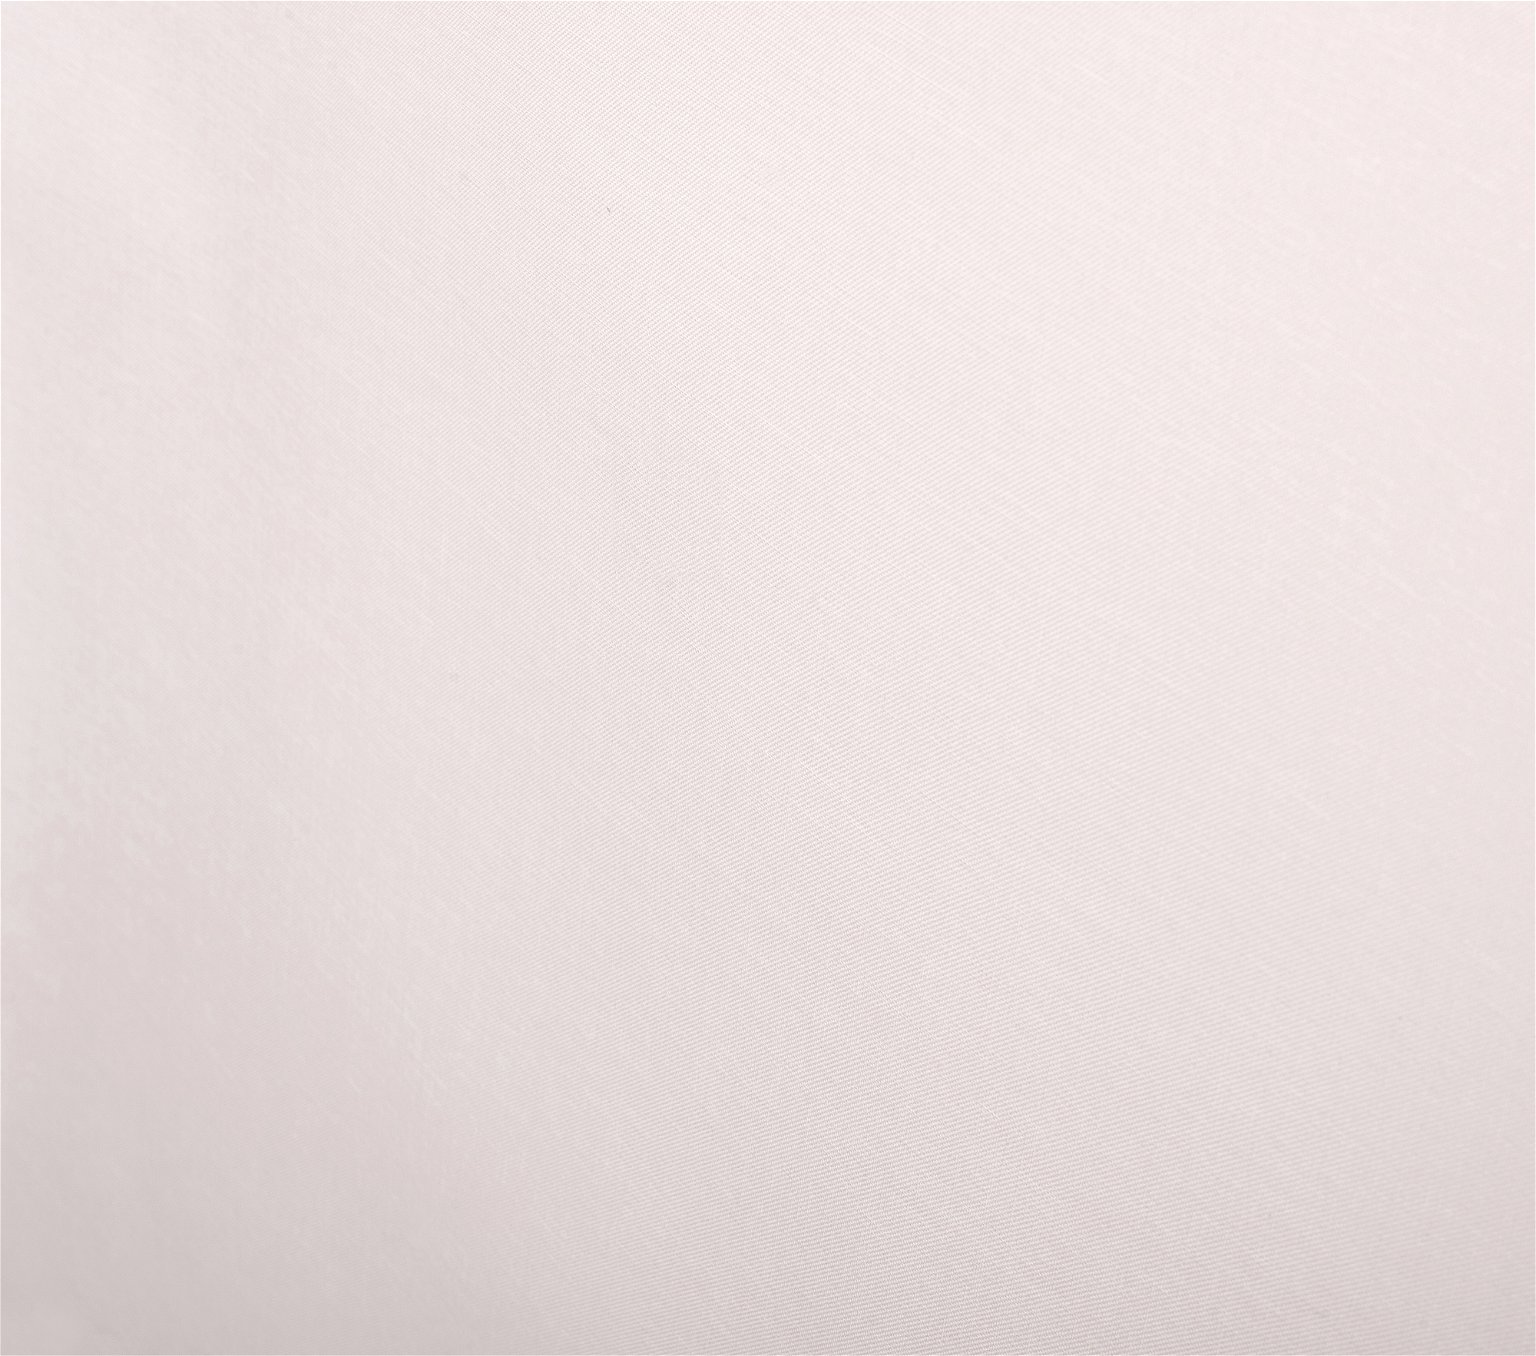 Klasikinė ritininė užuolaida MILAN, kreminės sp., 220 x 170 cm, 100 % poliesteris - 4